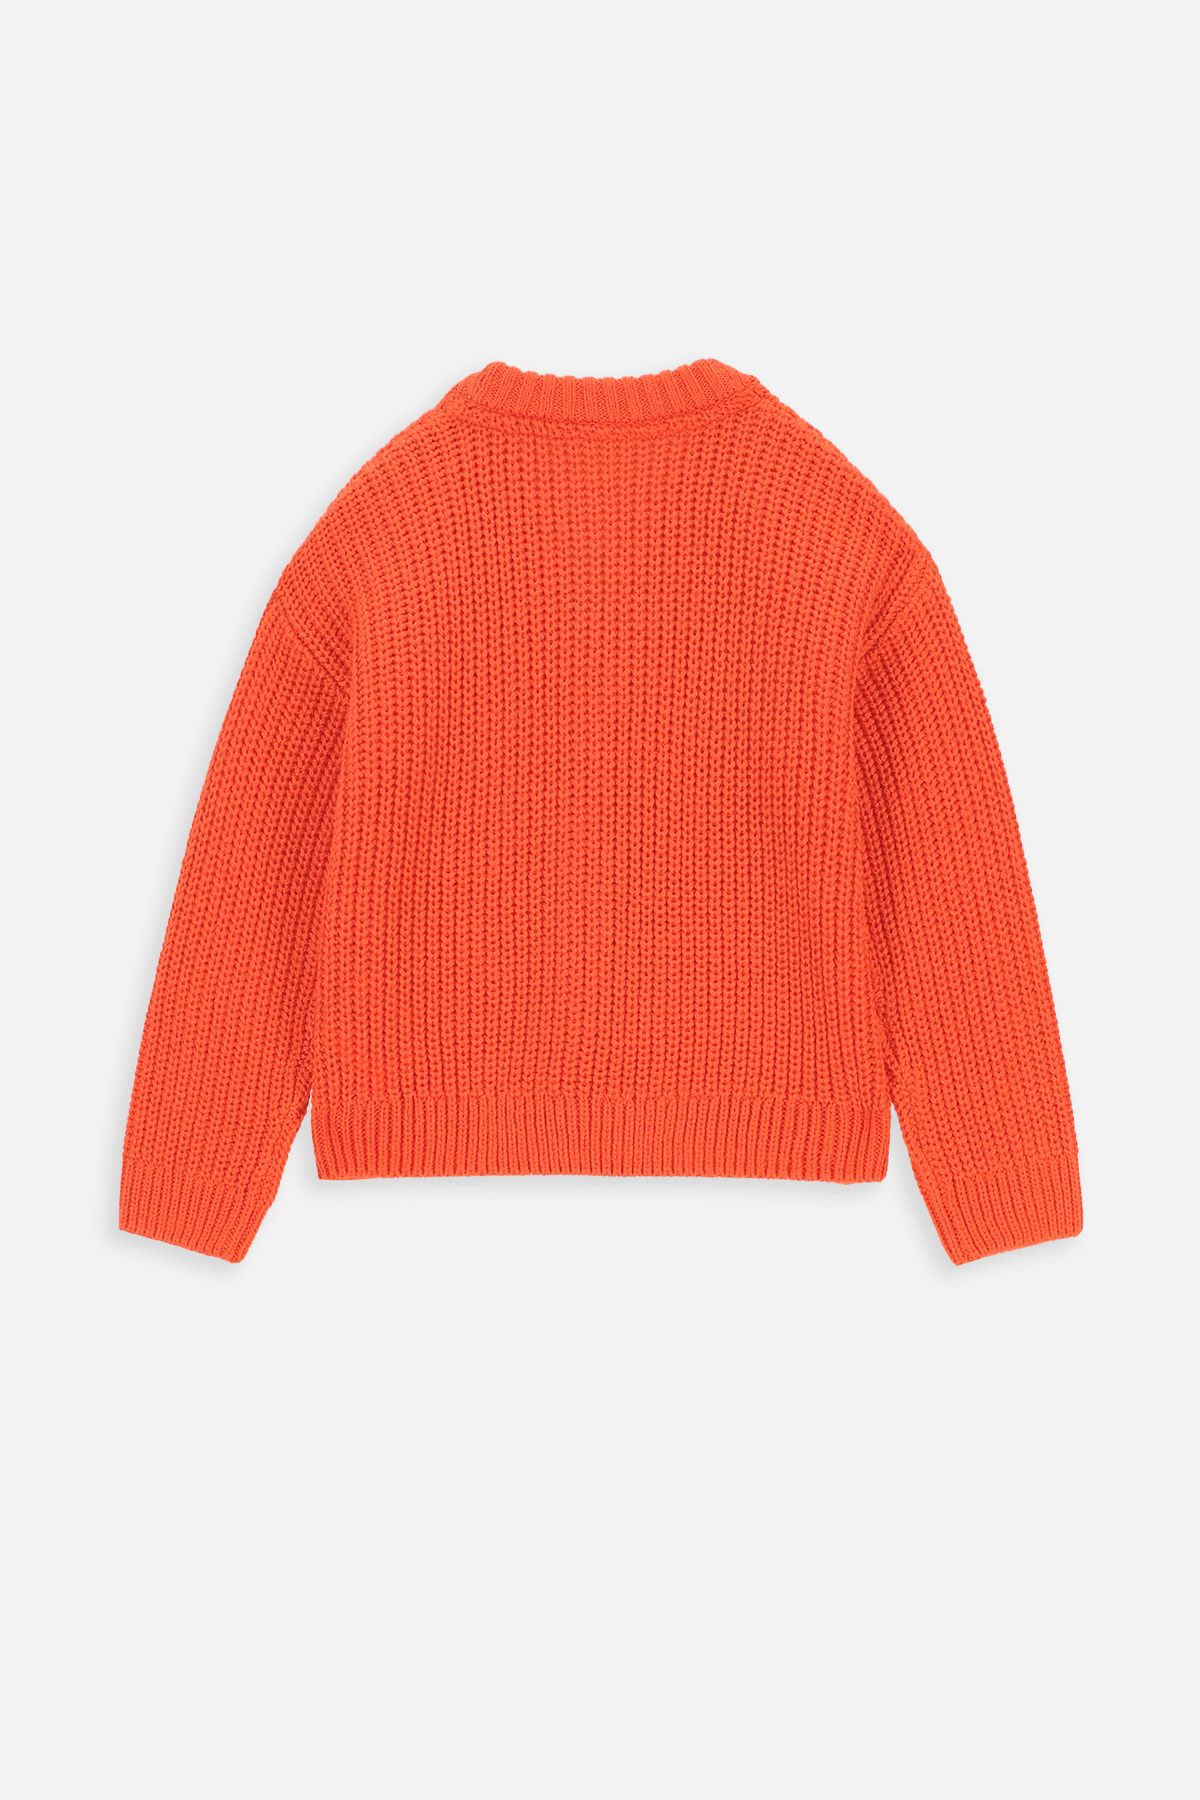 Sweter rozpinany pomarańczowy prążkowany z dekoltem w serek 2221500